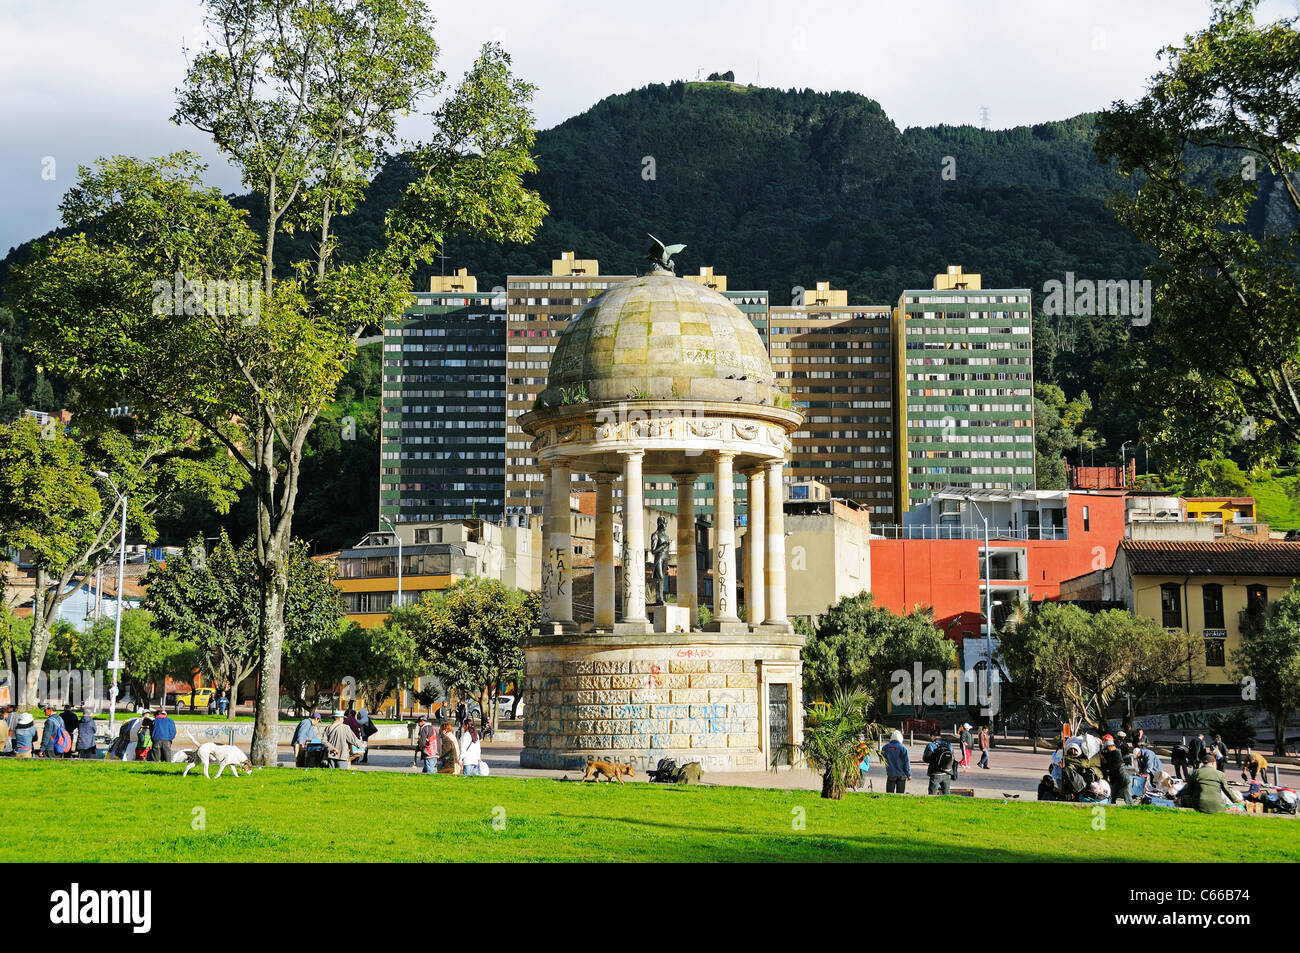 Pavilion Templete de Bolivar, Parque de los Periodistas, Cerro Monserrate, Bogotá, Colombia Stock Photo